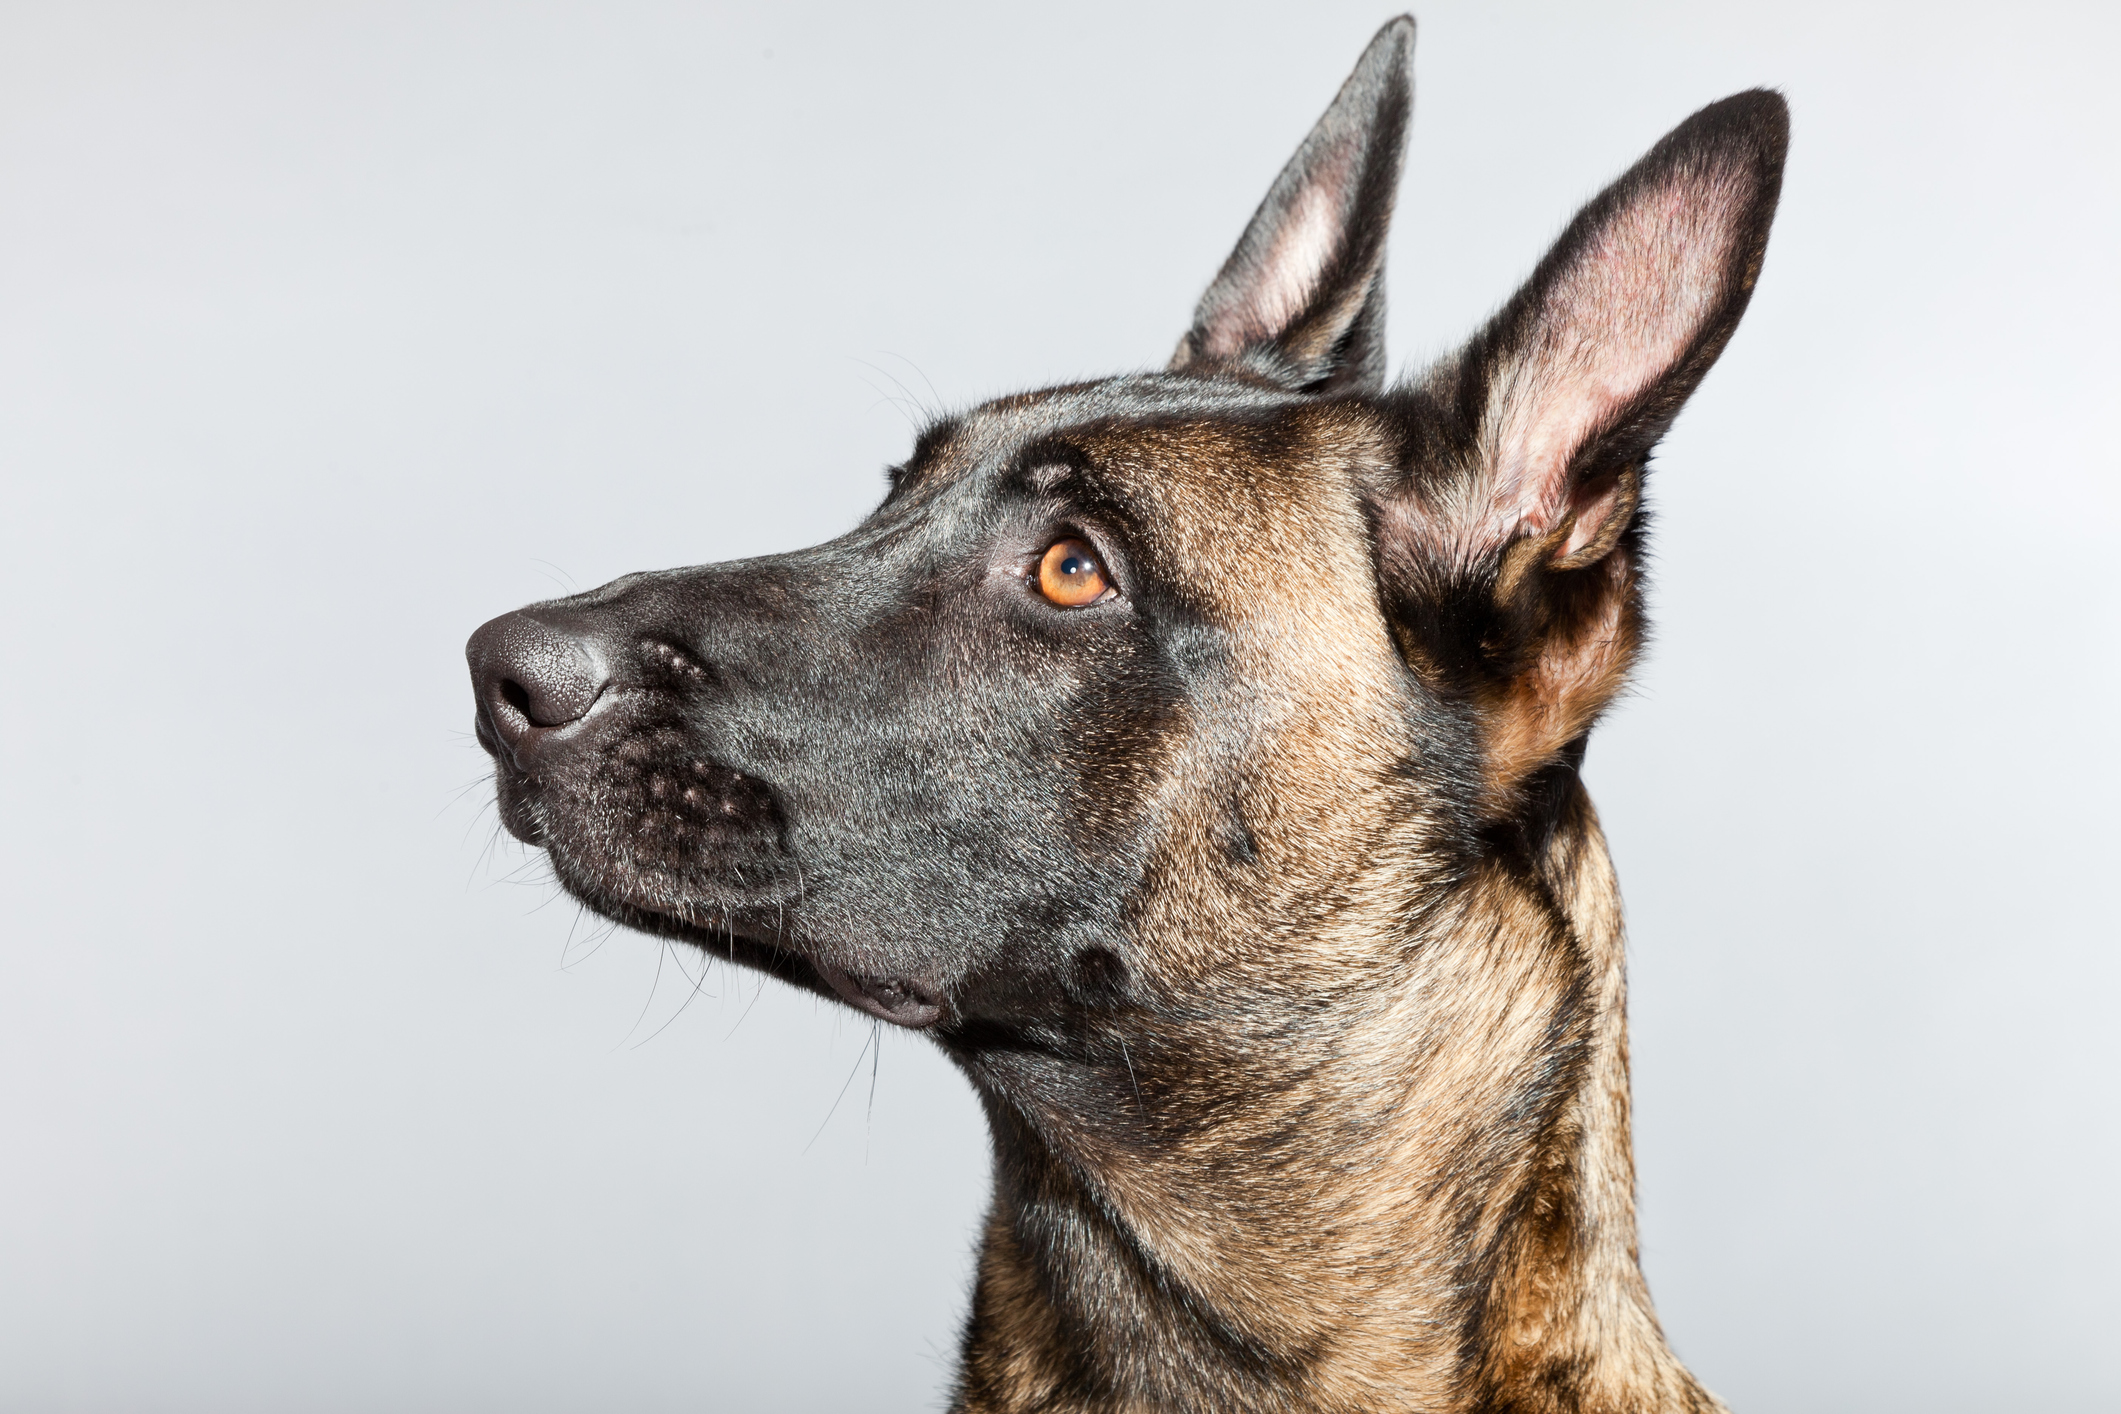 are bones safe for belgian shepherd puppies